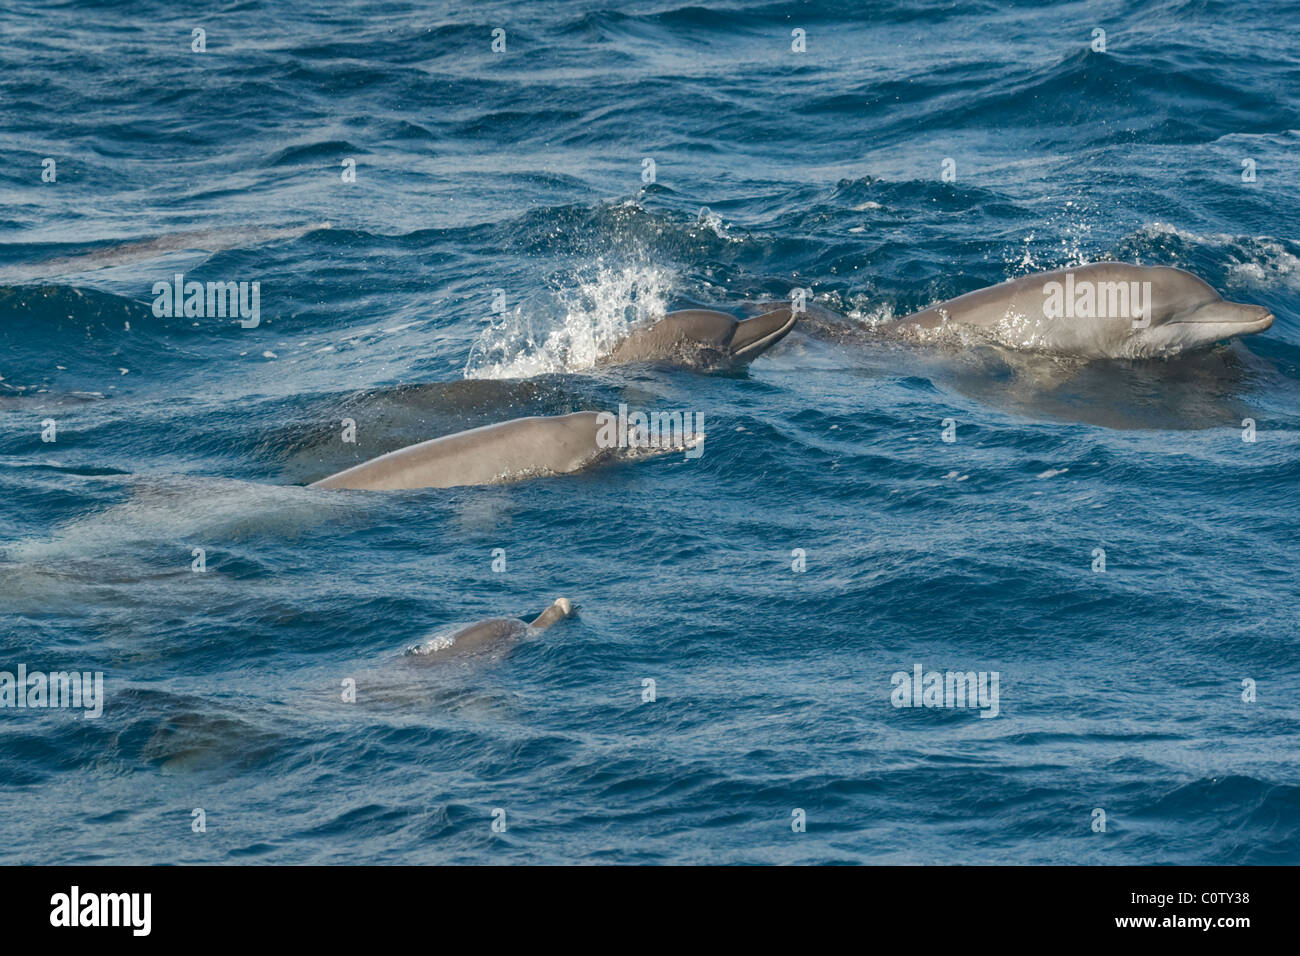 Les grands dauphins de l'Indo-Pacifique, Tursiops aduncus, surfaçage, Maldives, océan Indien. Banque D'Images